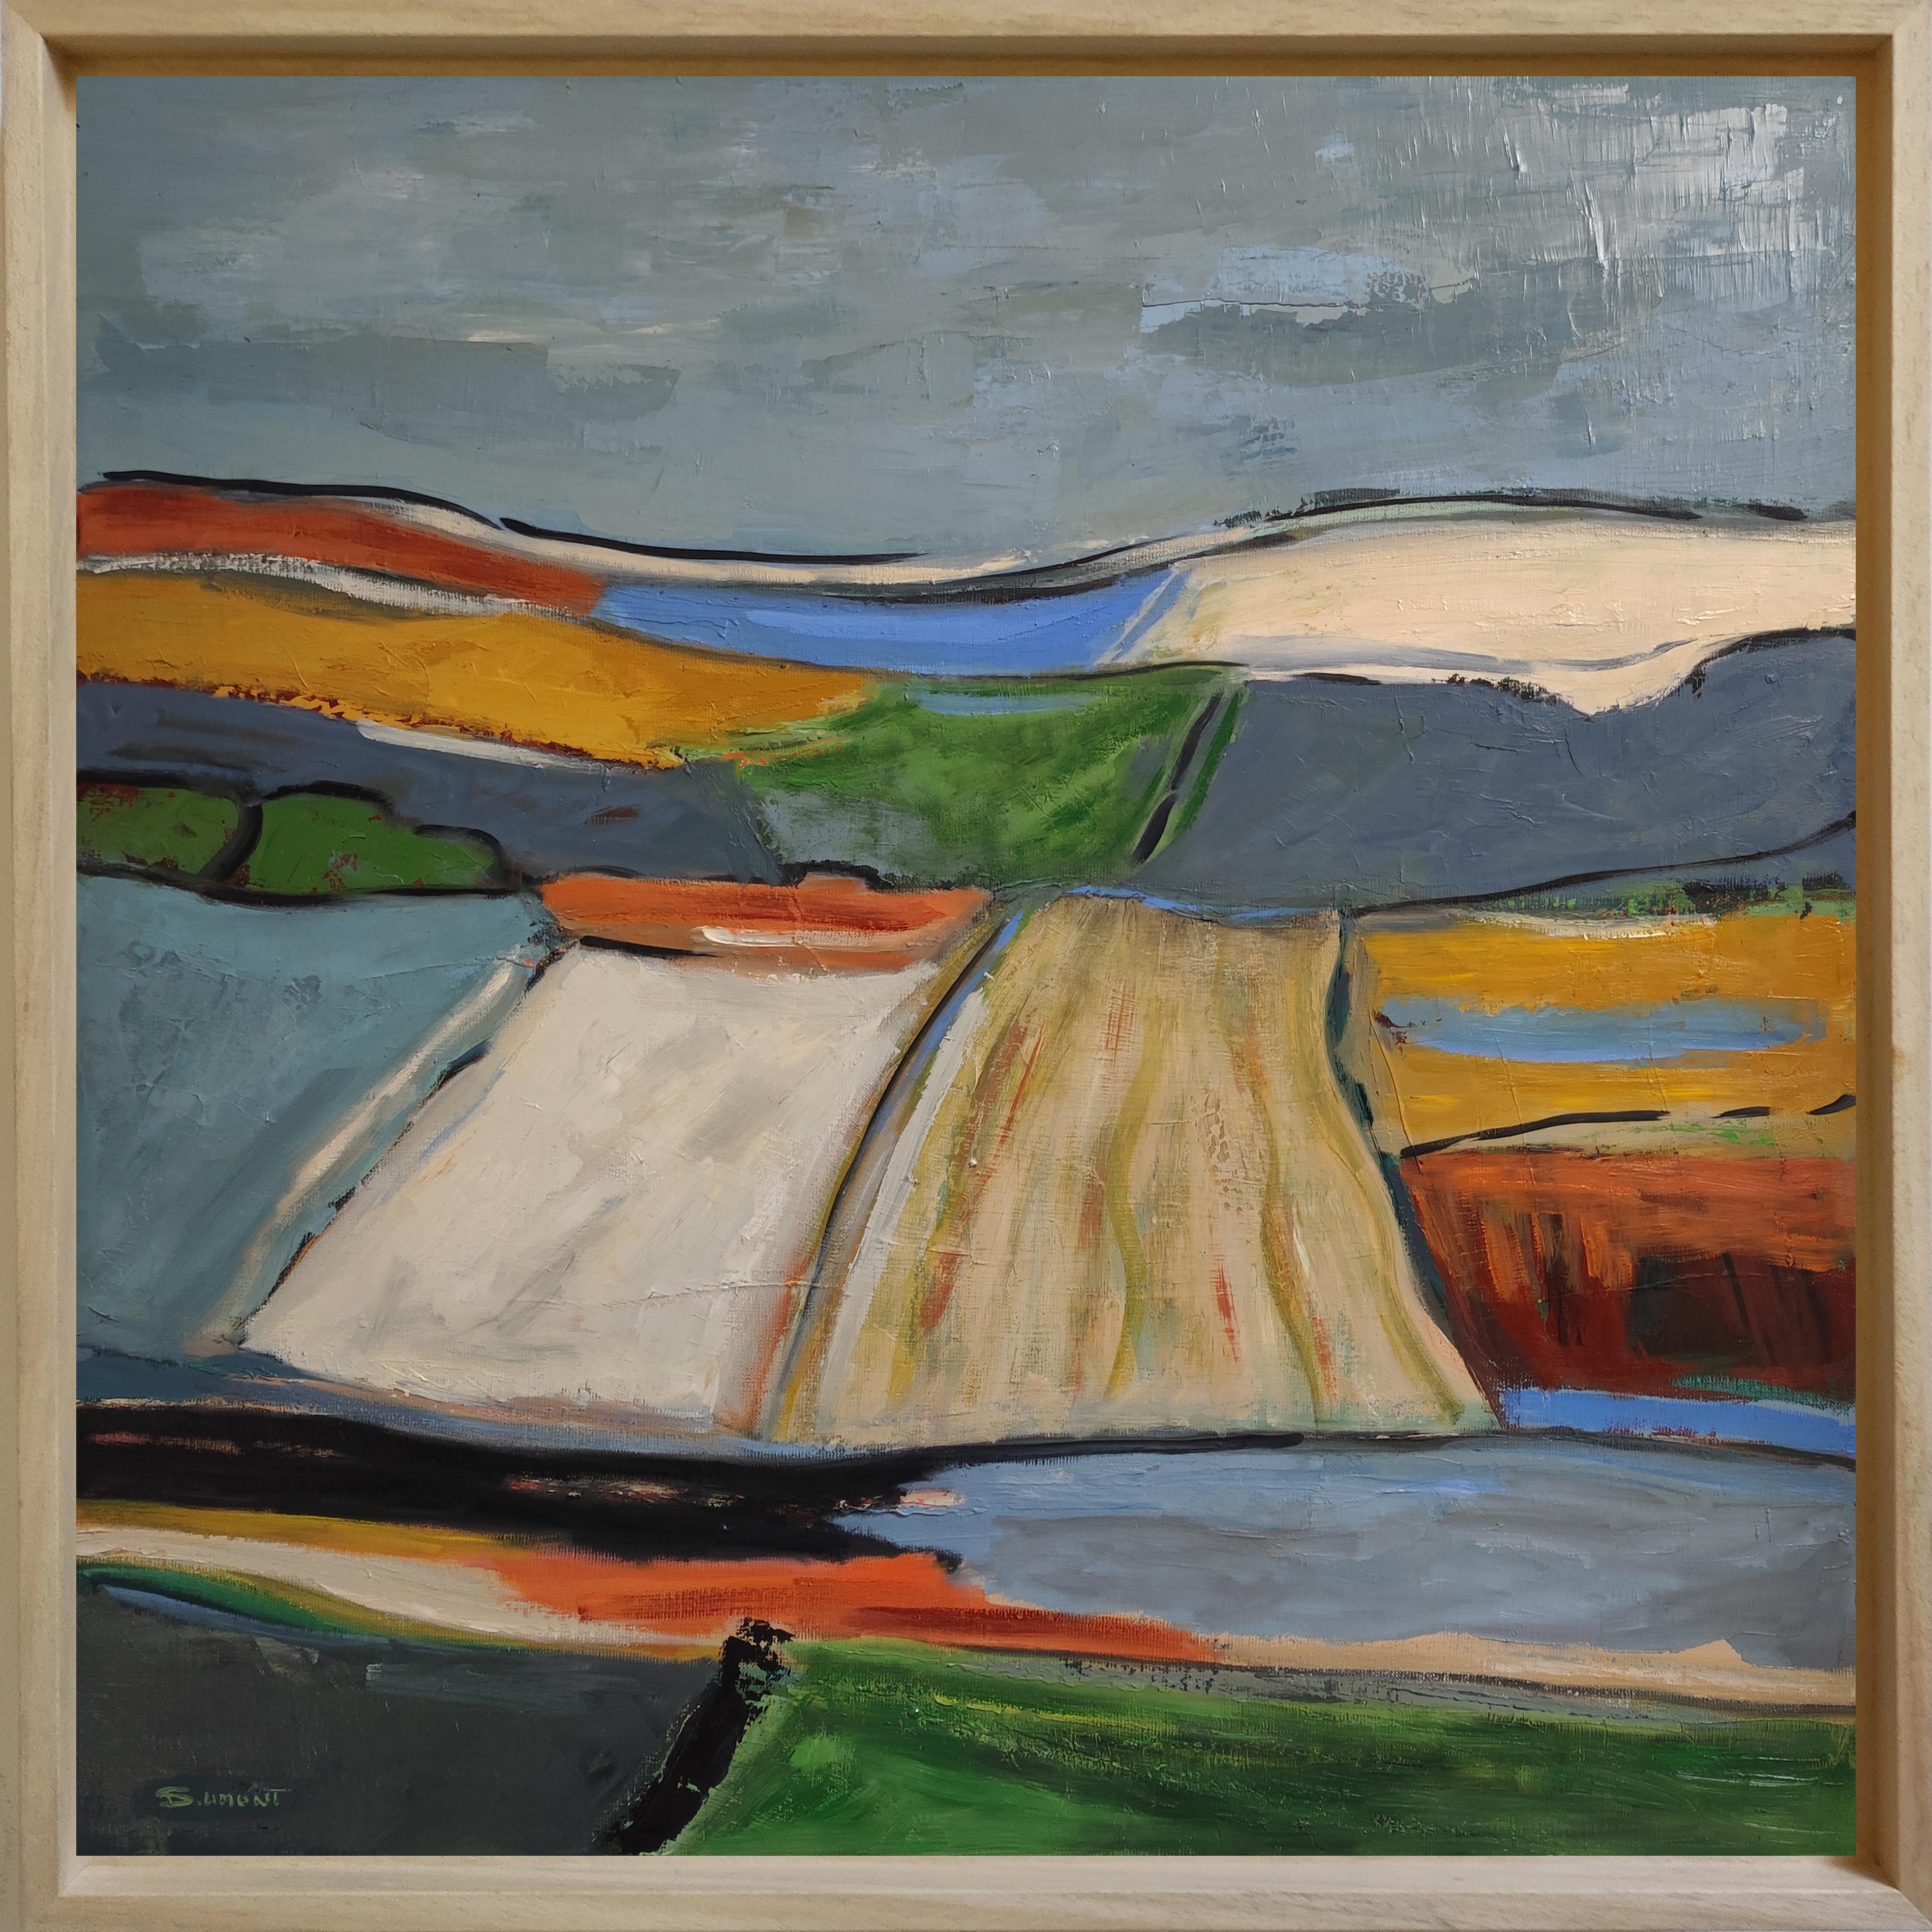 Lumieres printanieres, Abstrakte Landschaft, Multicolor, Französisch, Contemporary (Abstrakter Expressionismus), Painting, von SOPHIE DUMONT